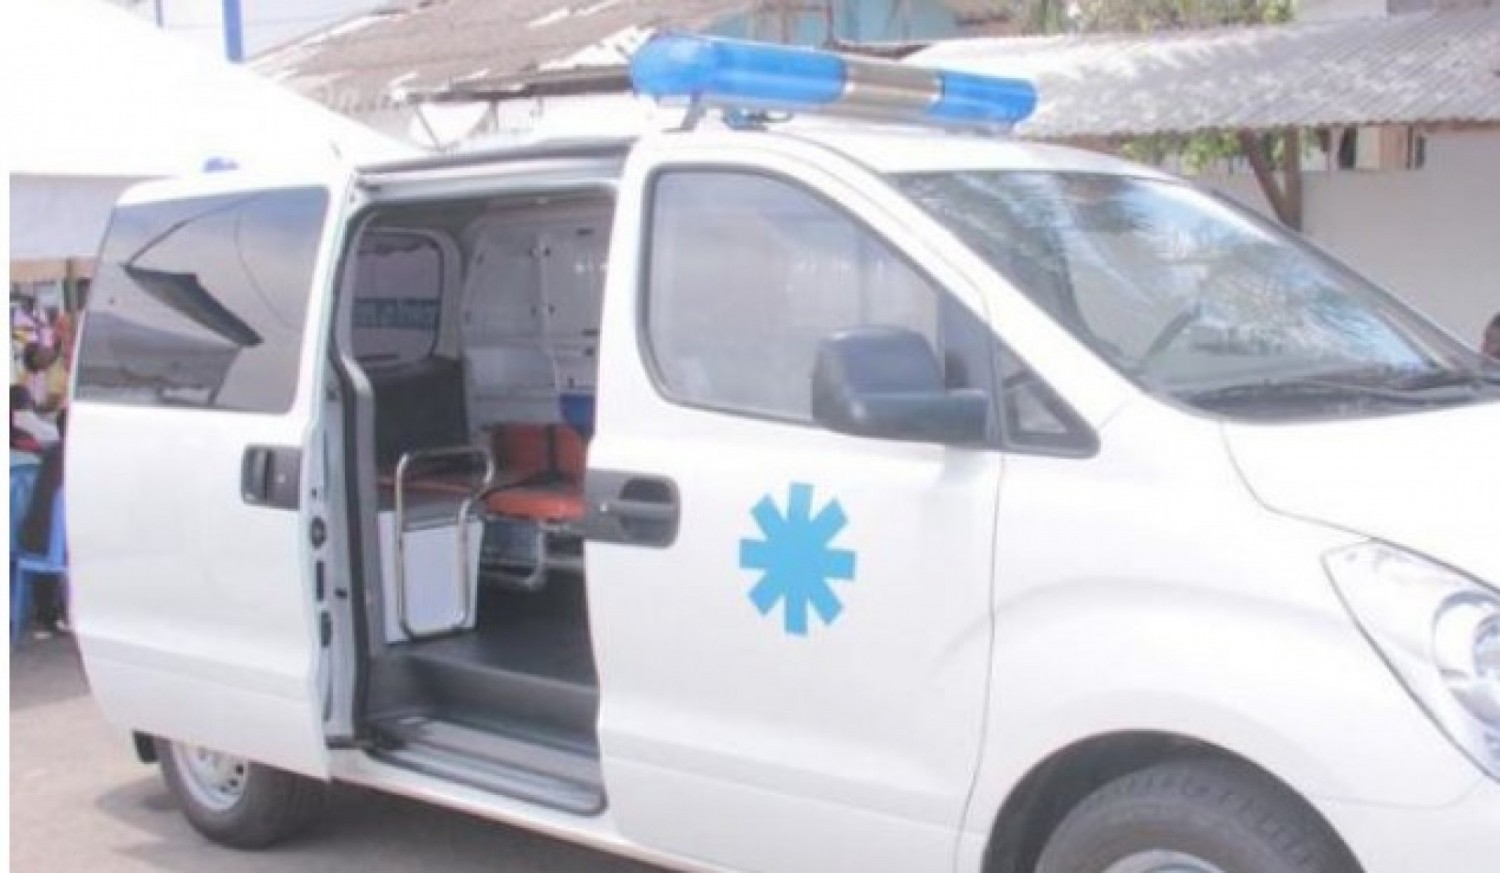 Côte d'Ivoire : Le corps en état de putréfaction d'un enfant découvert dans une ambulance, une enquête ouverte